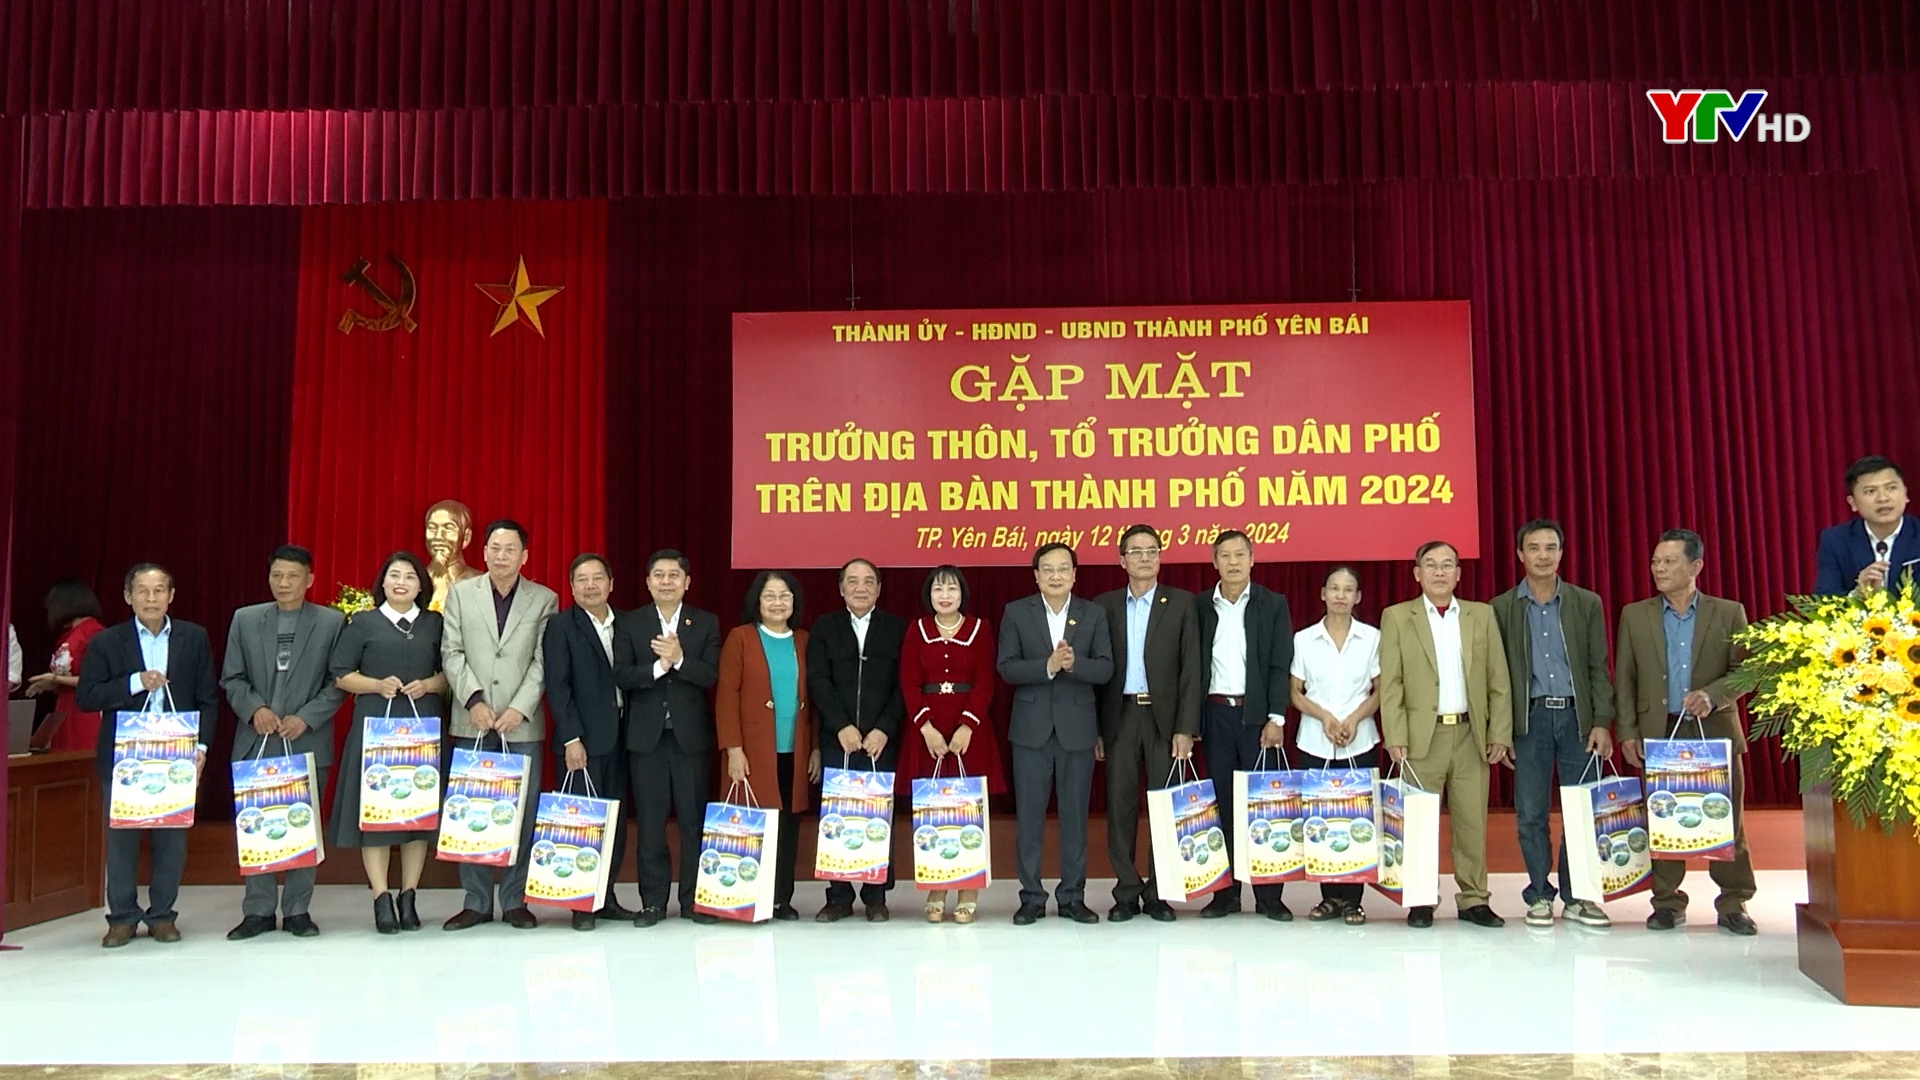 Đồng chí Chủ tịch UBND tỉnh Trần Huy Tuấn dự Hội nghị gặp mặt trưởng thôn, tổ trưởng dân phố trên địa bàn thành phố Yên Bái năm 2024